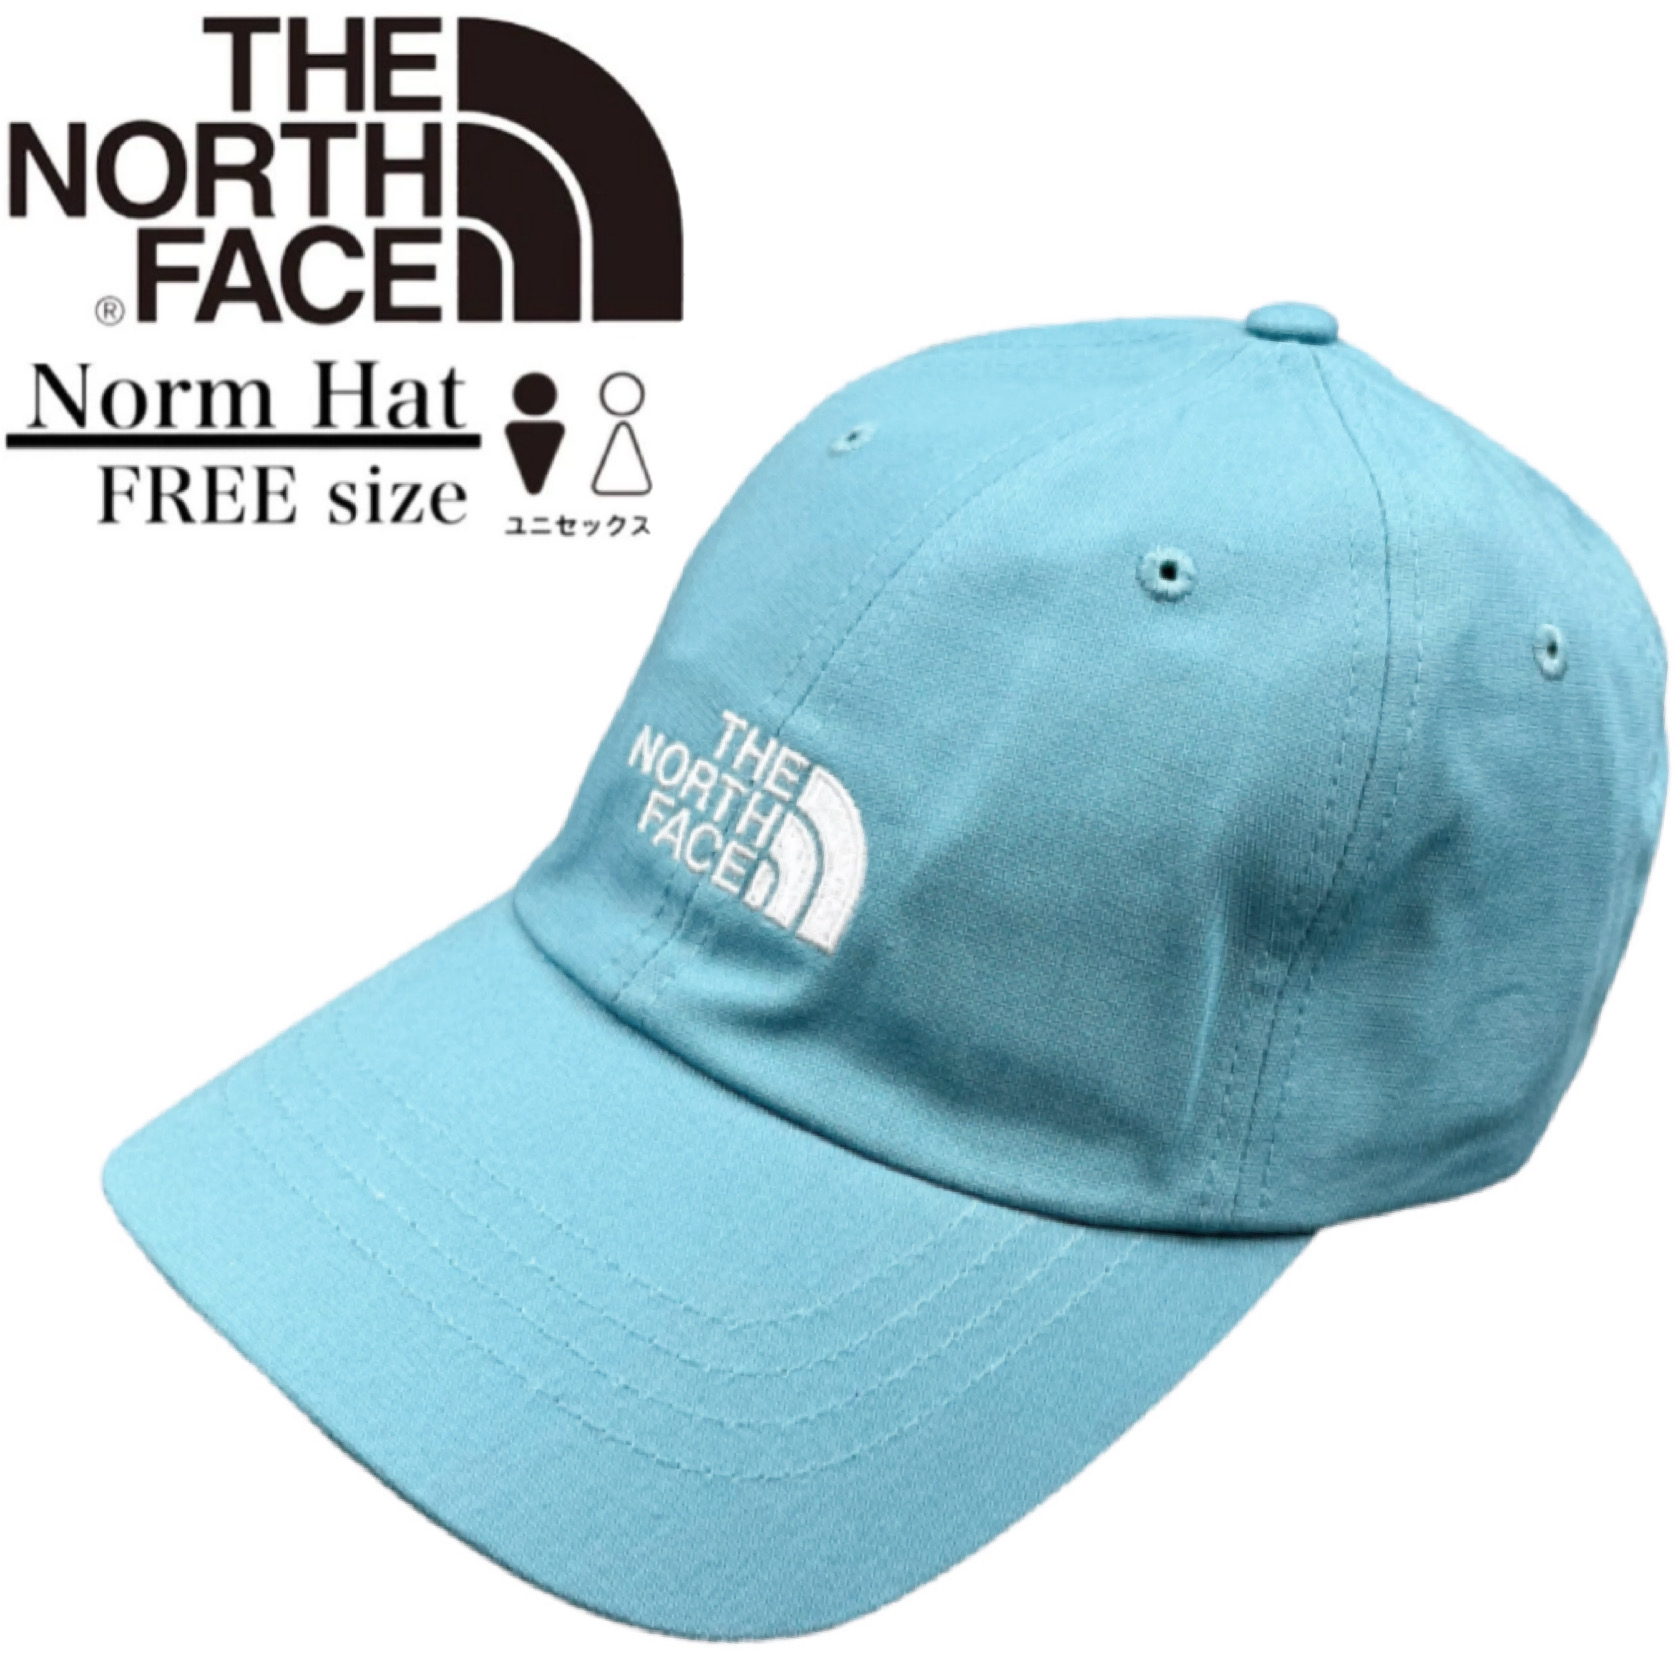 ザ ノースフェイス The North Face ノーム ハット キャップ 帽子 ワンサイズ NF0A3SH3 ユニセックス メンズ レディース  THE NORTH FACE NORM CAP